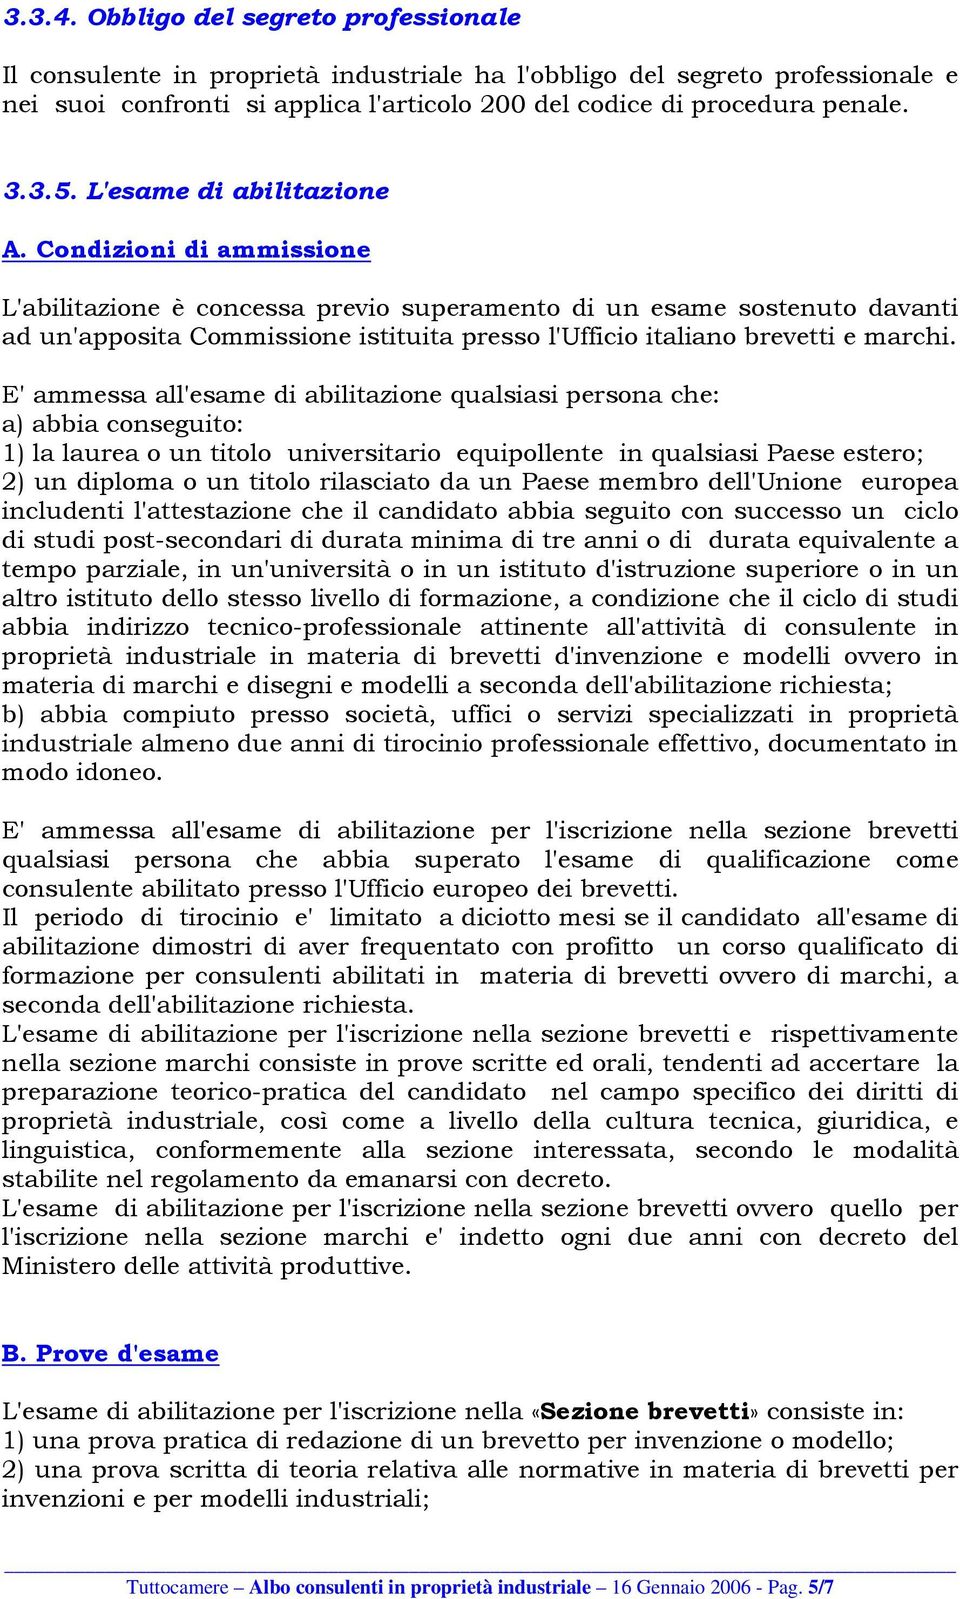 Condizioni di ammissione L'abilitazione è concessa previo superamento di un esame sostenuto davanti ad un'apposita Commissione istituita presso l'ufficio italiano brevetti e marchi.